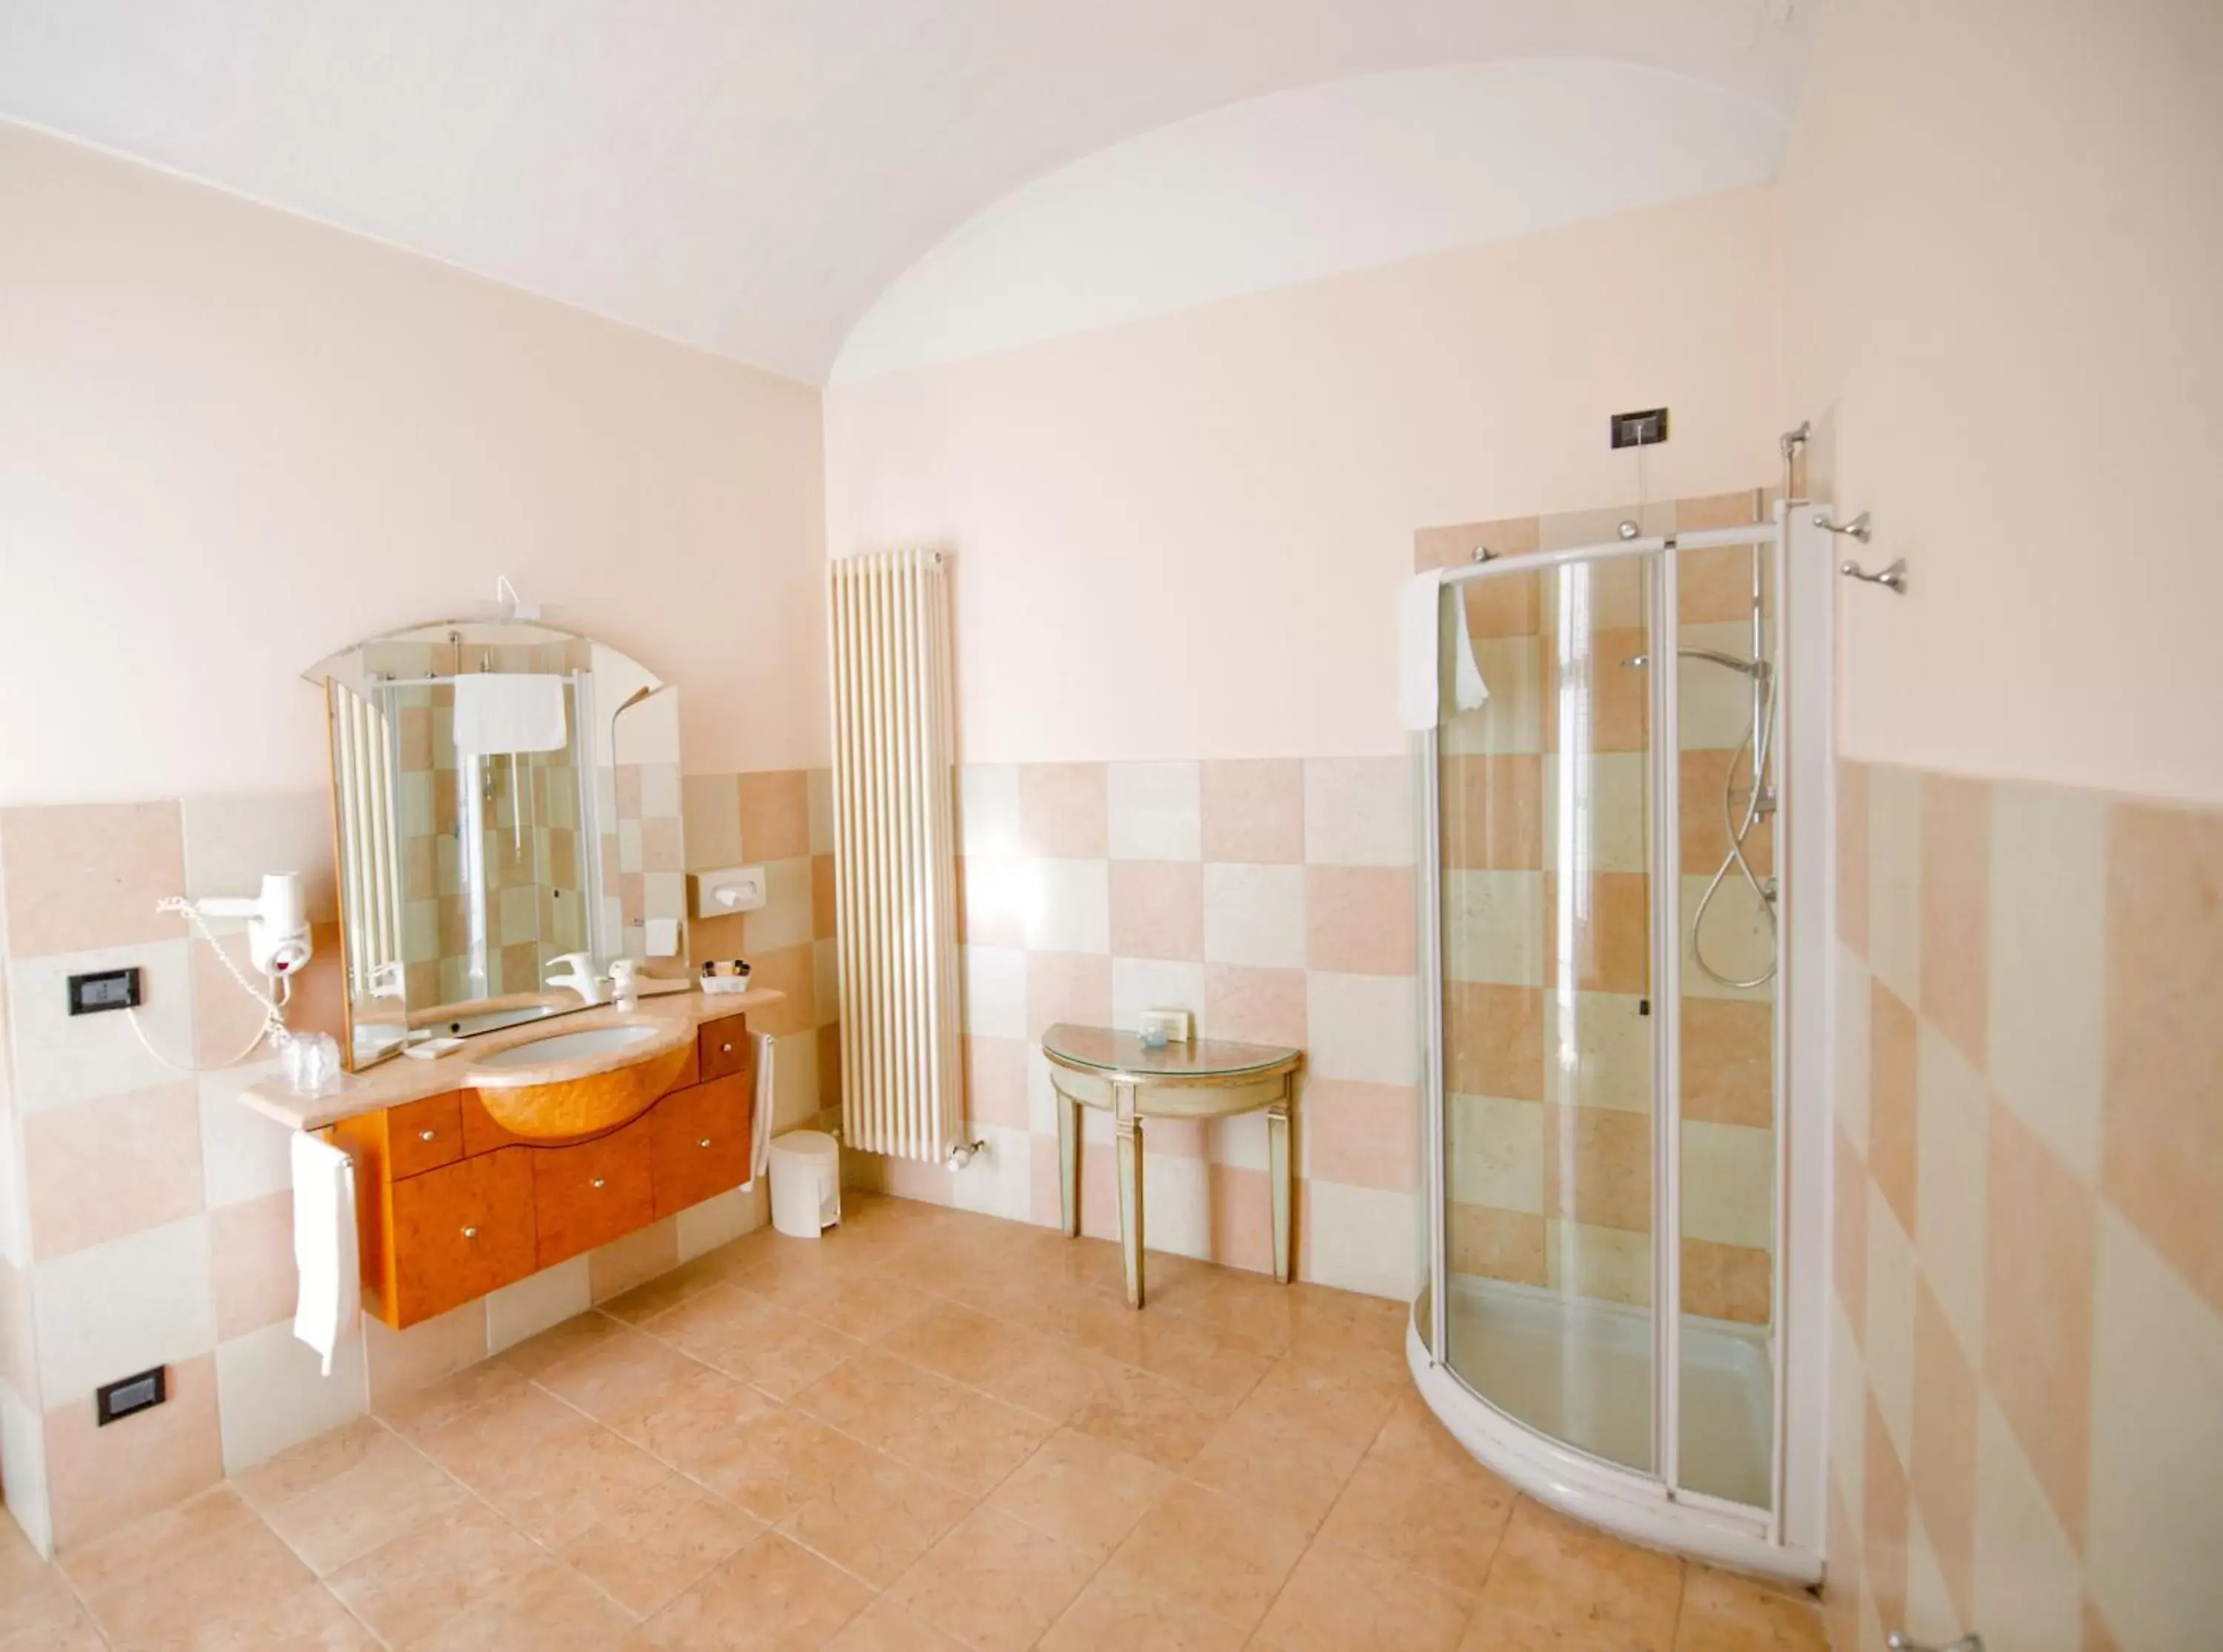 Bathroom in Castello Rosso